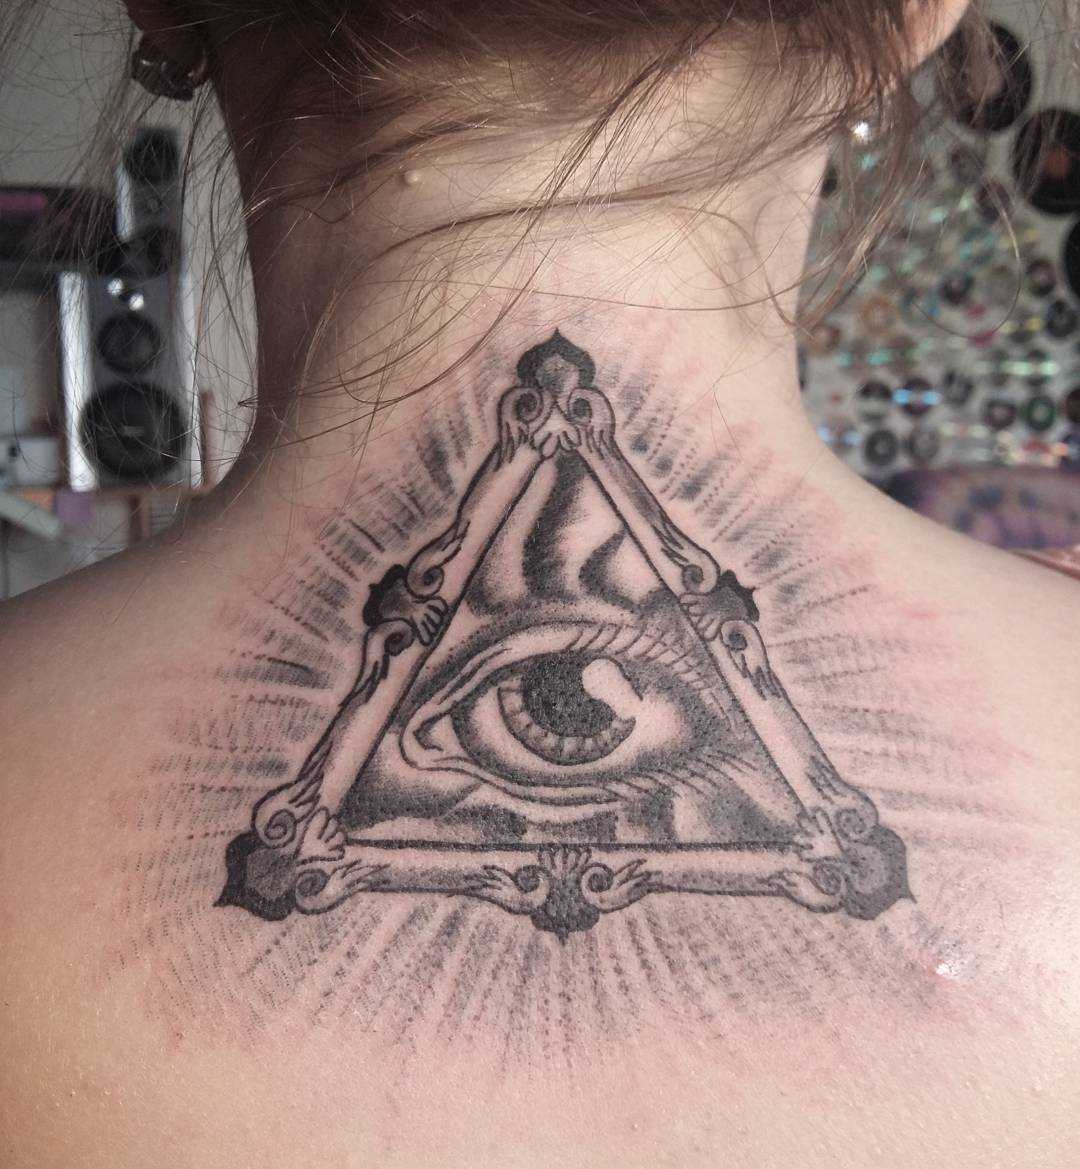 Esta foto de uma linda tatuagem piscar de olhos que tudo vê na parte de trás da menina